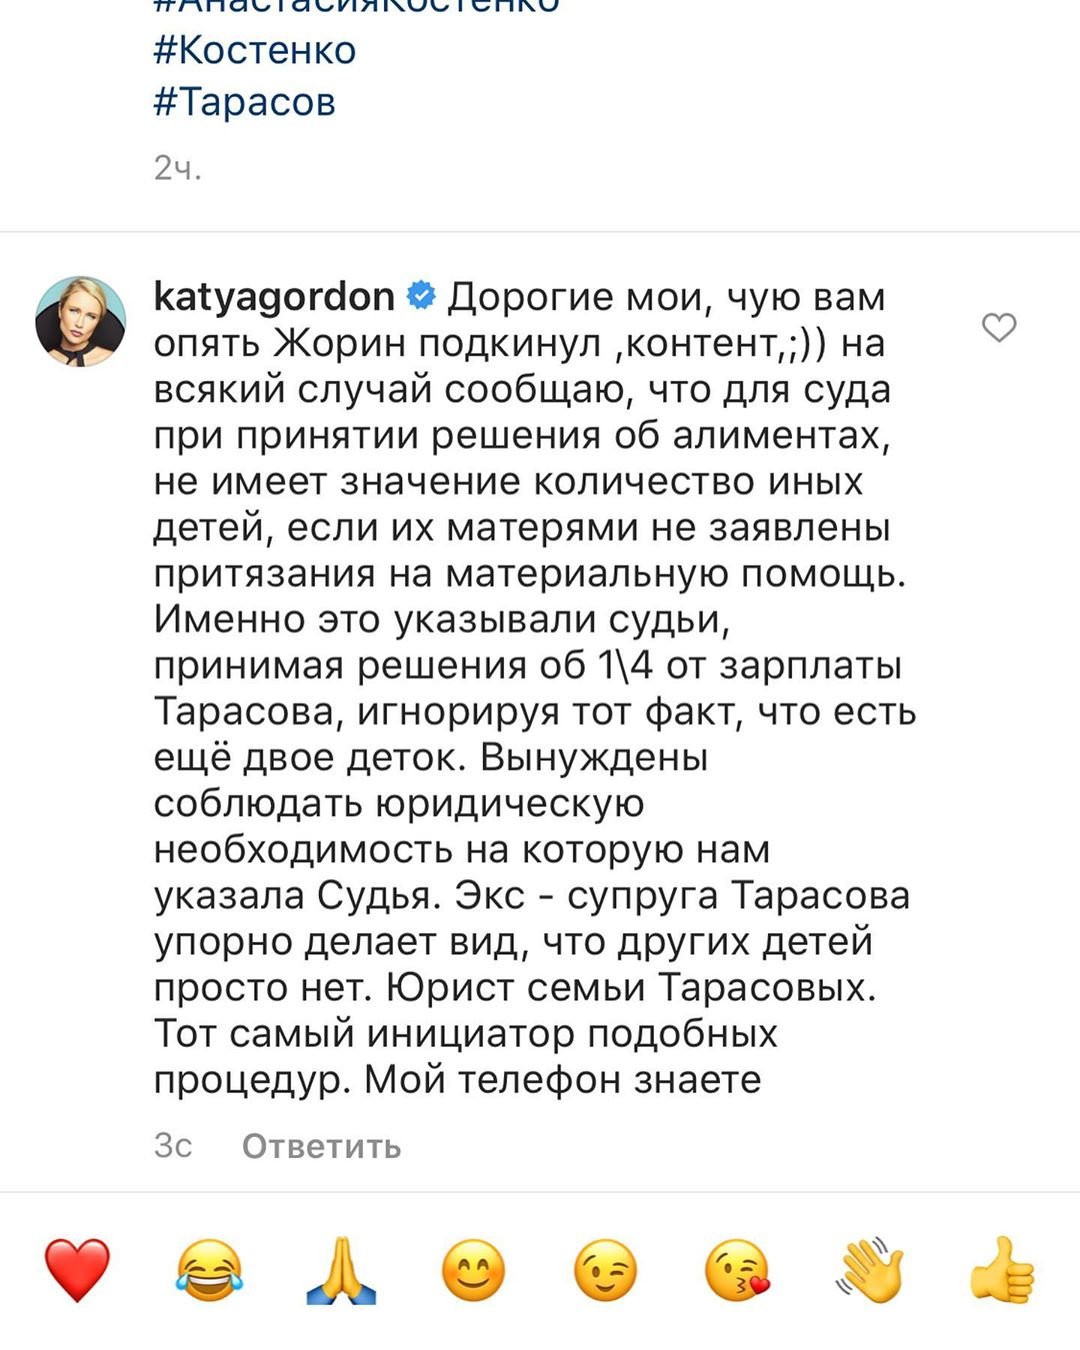 Юрист Катя Гордон объяснила, как Анастасия Костенко отсудила алименты у Дмитрия Тарасова